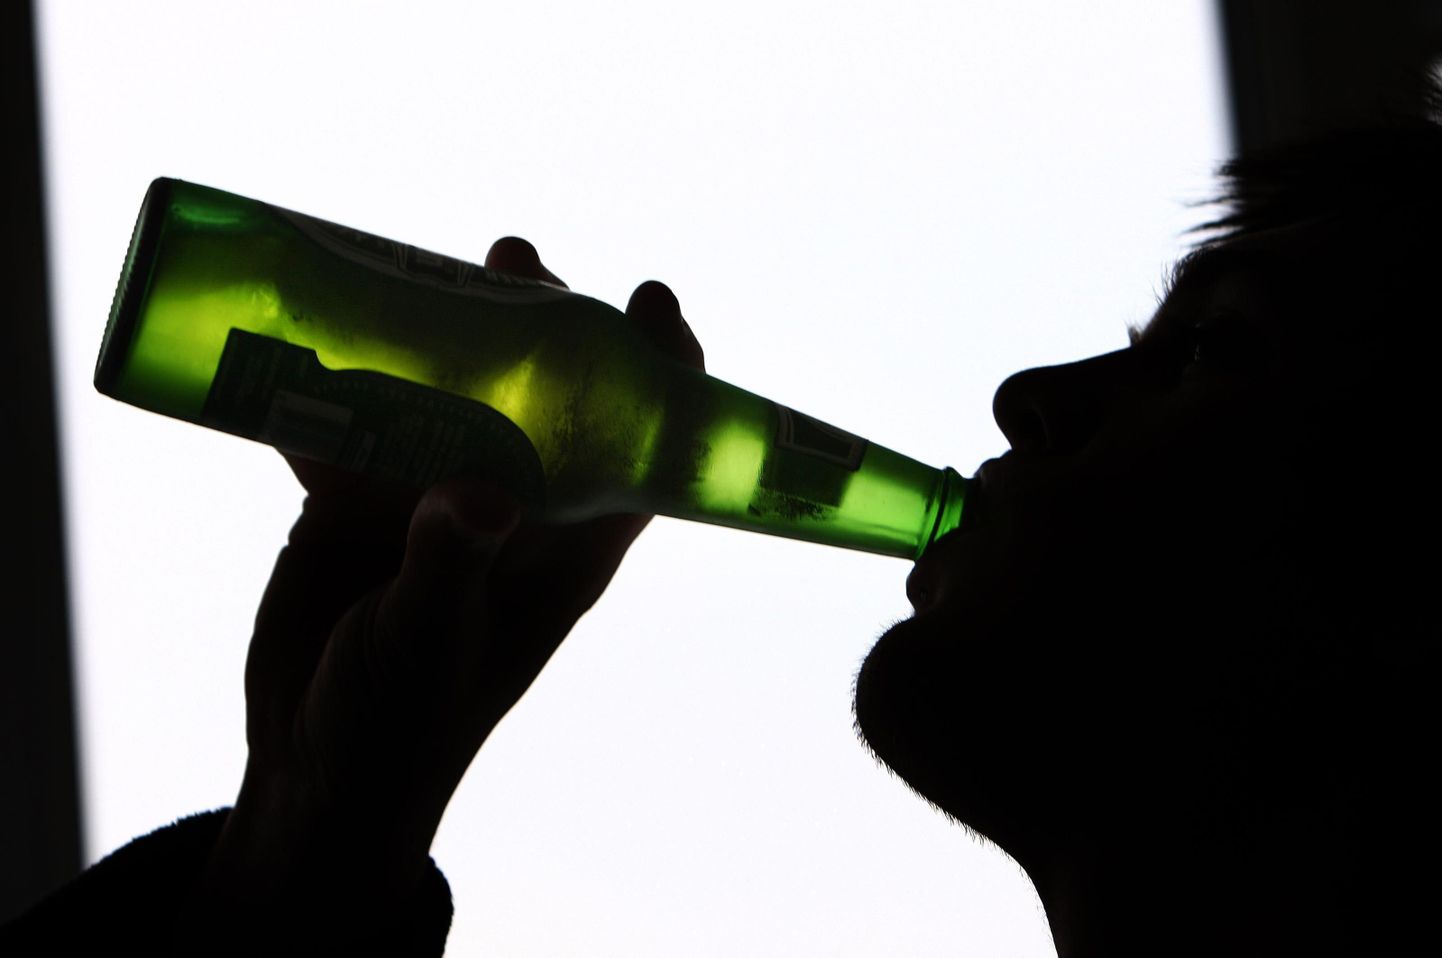 Hoiatavate siltide kleepimine alkoholipudelitele võib aidata piirata alkoholi tarbimist.